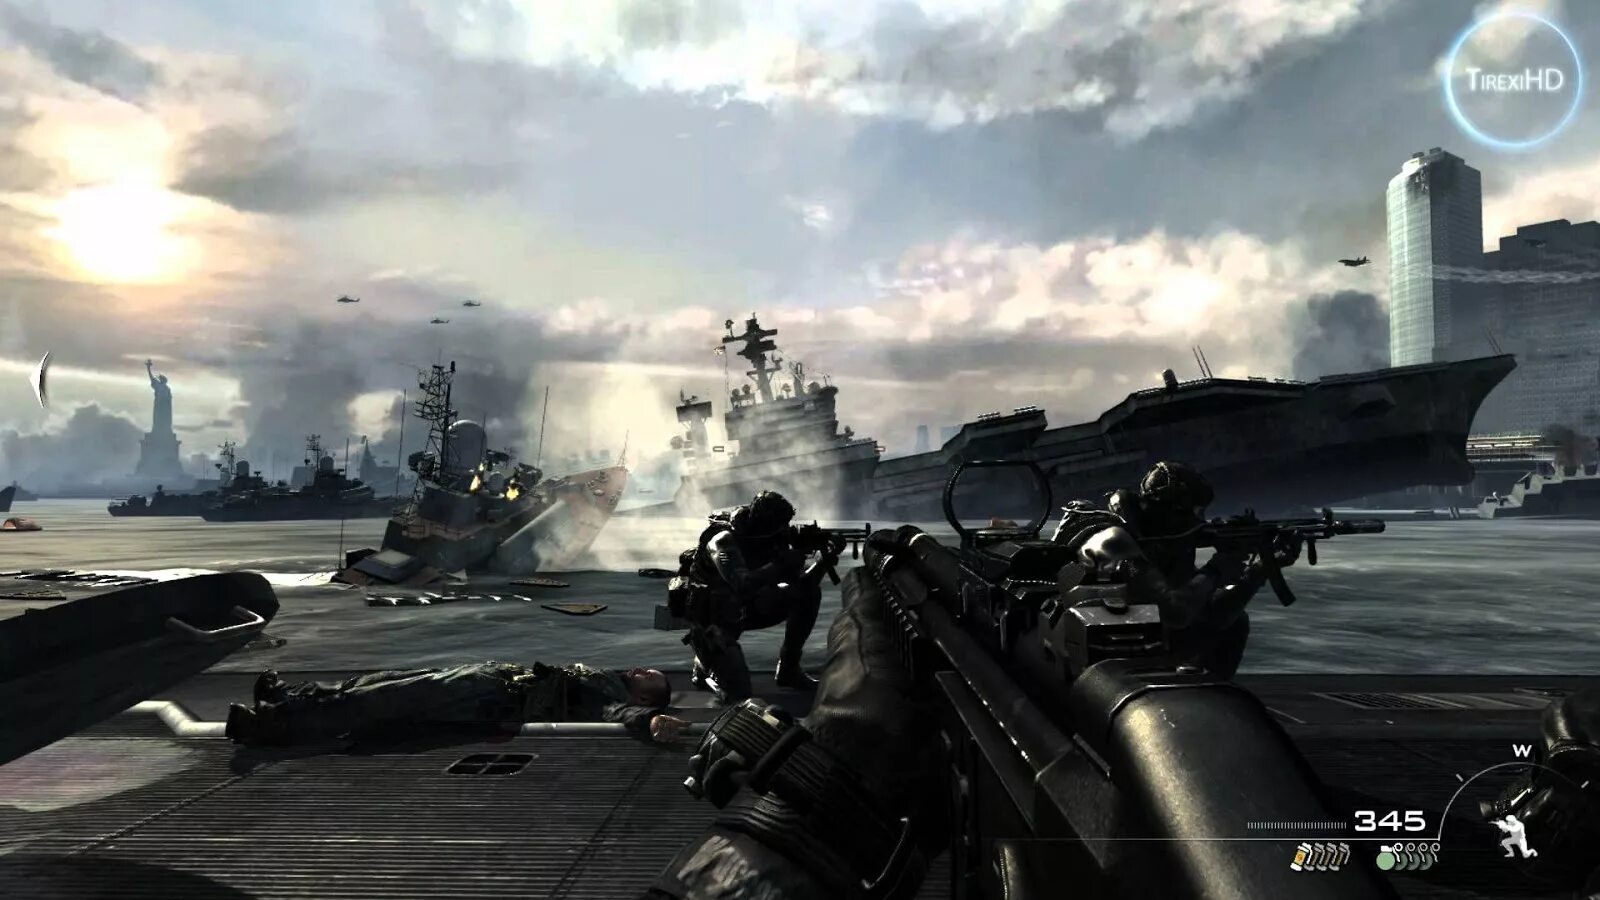 Call of Duty Modern Warfare 3 Gameplay. Cod Modern Warfare 3. Cod mw3 Gameplay. Call of Duty Modern Warfare 3 геймплей. Модерн варфаер 3 бесплатная версия